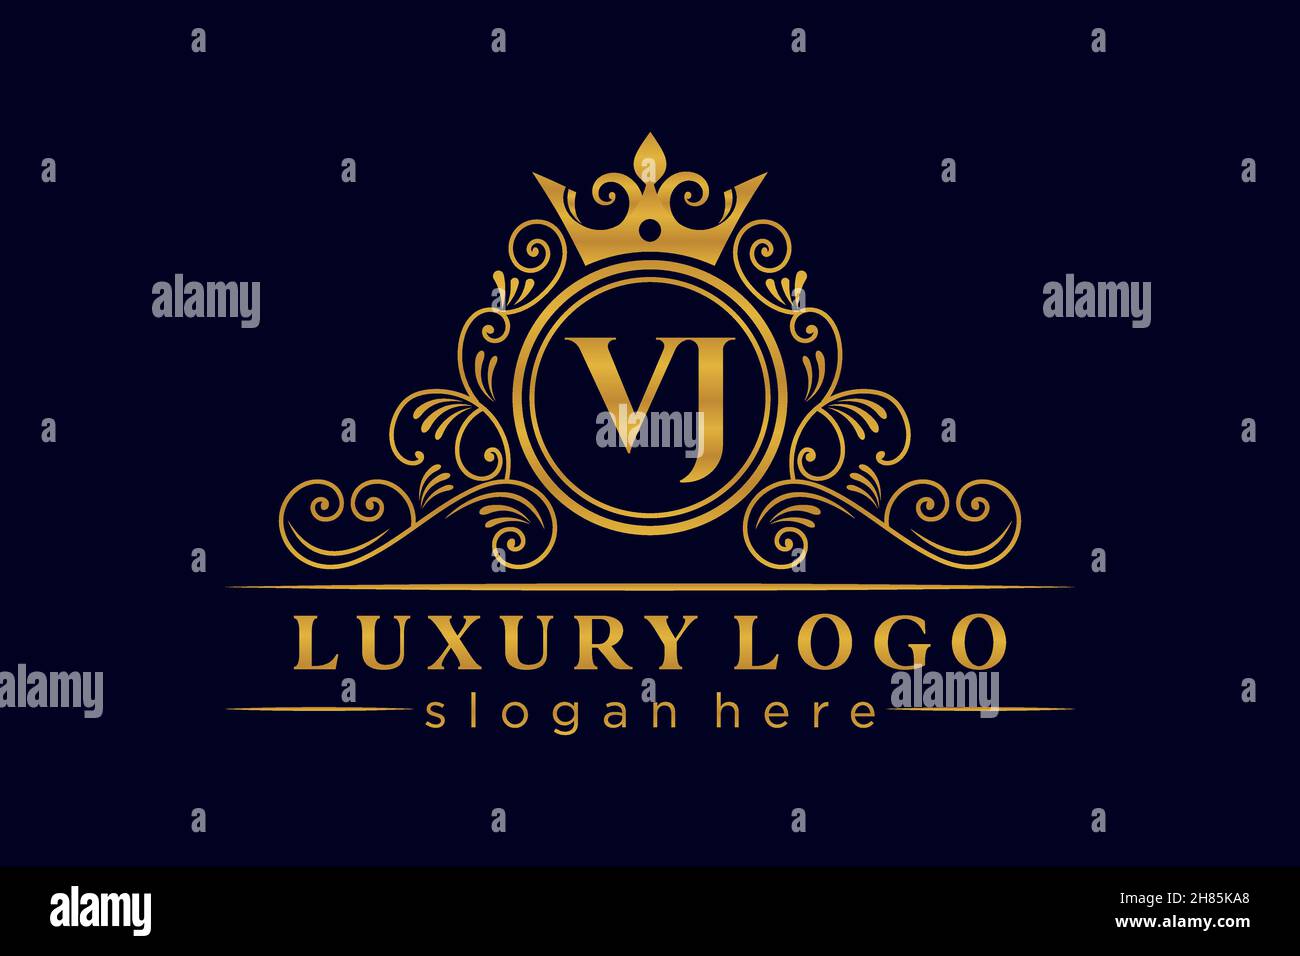 VJ Initial Letter Gold calligraphic feminine floral hand drawn heraldic monogram antique vintage style luxury logo design Premium Stock Vector